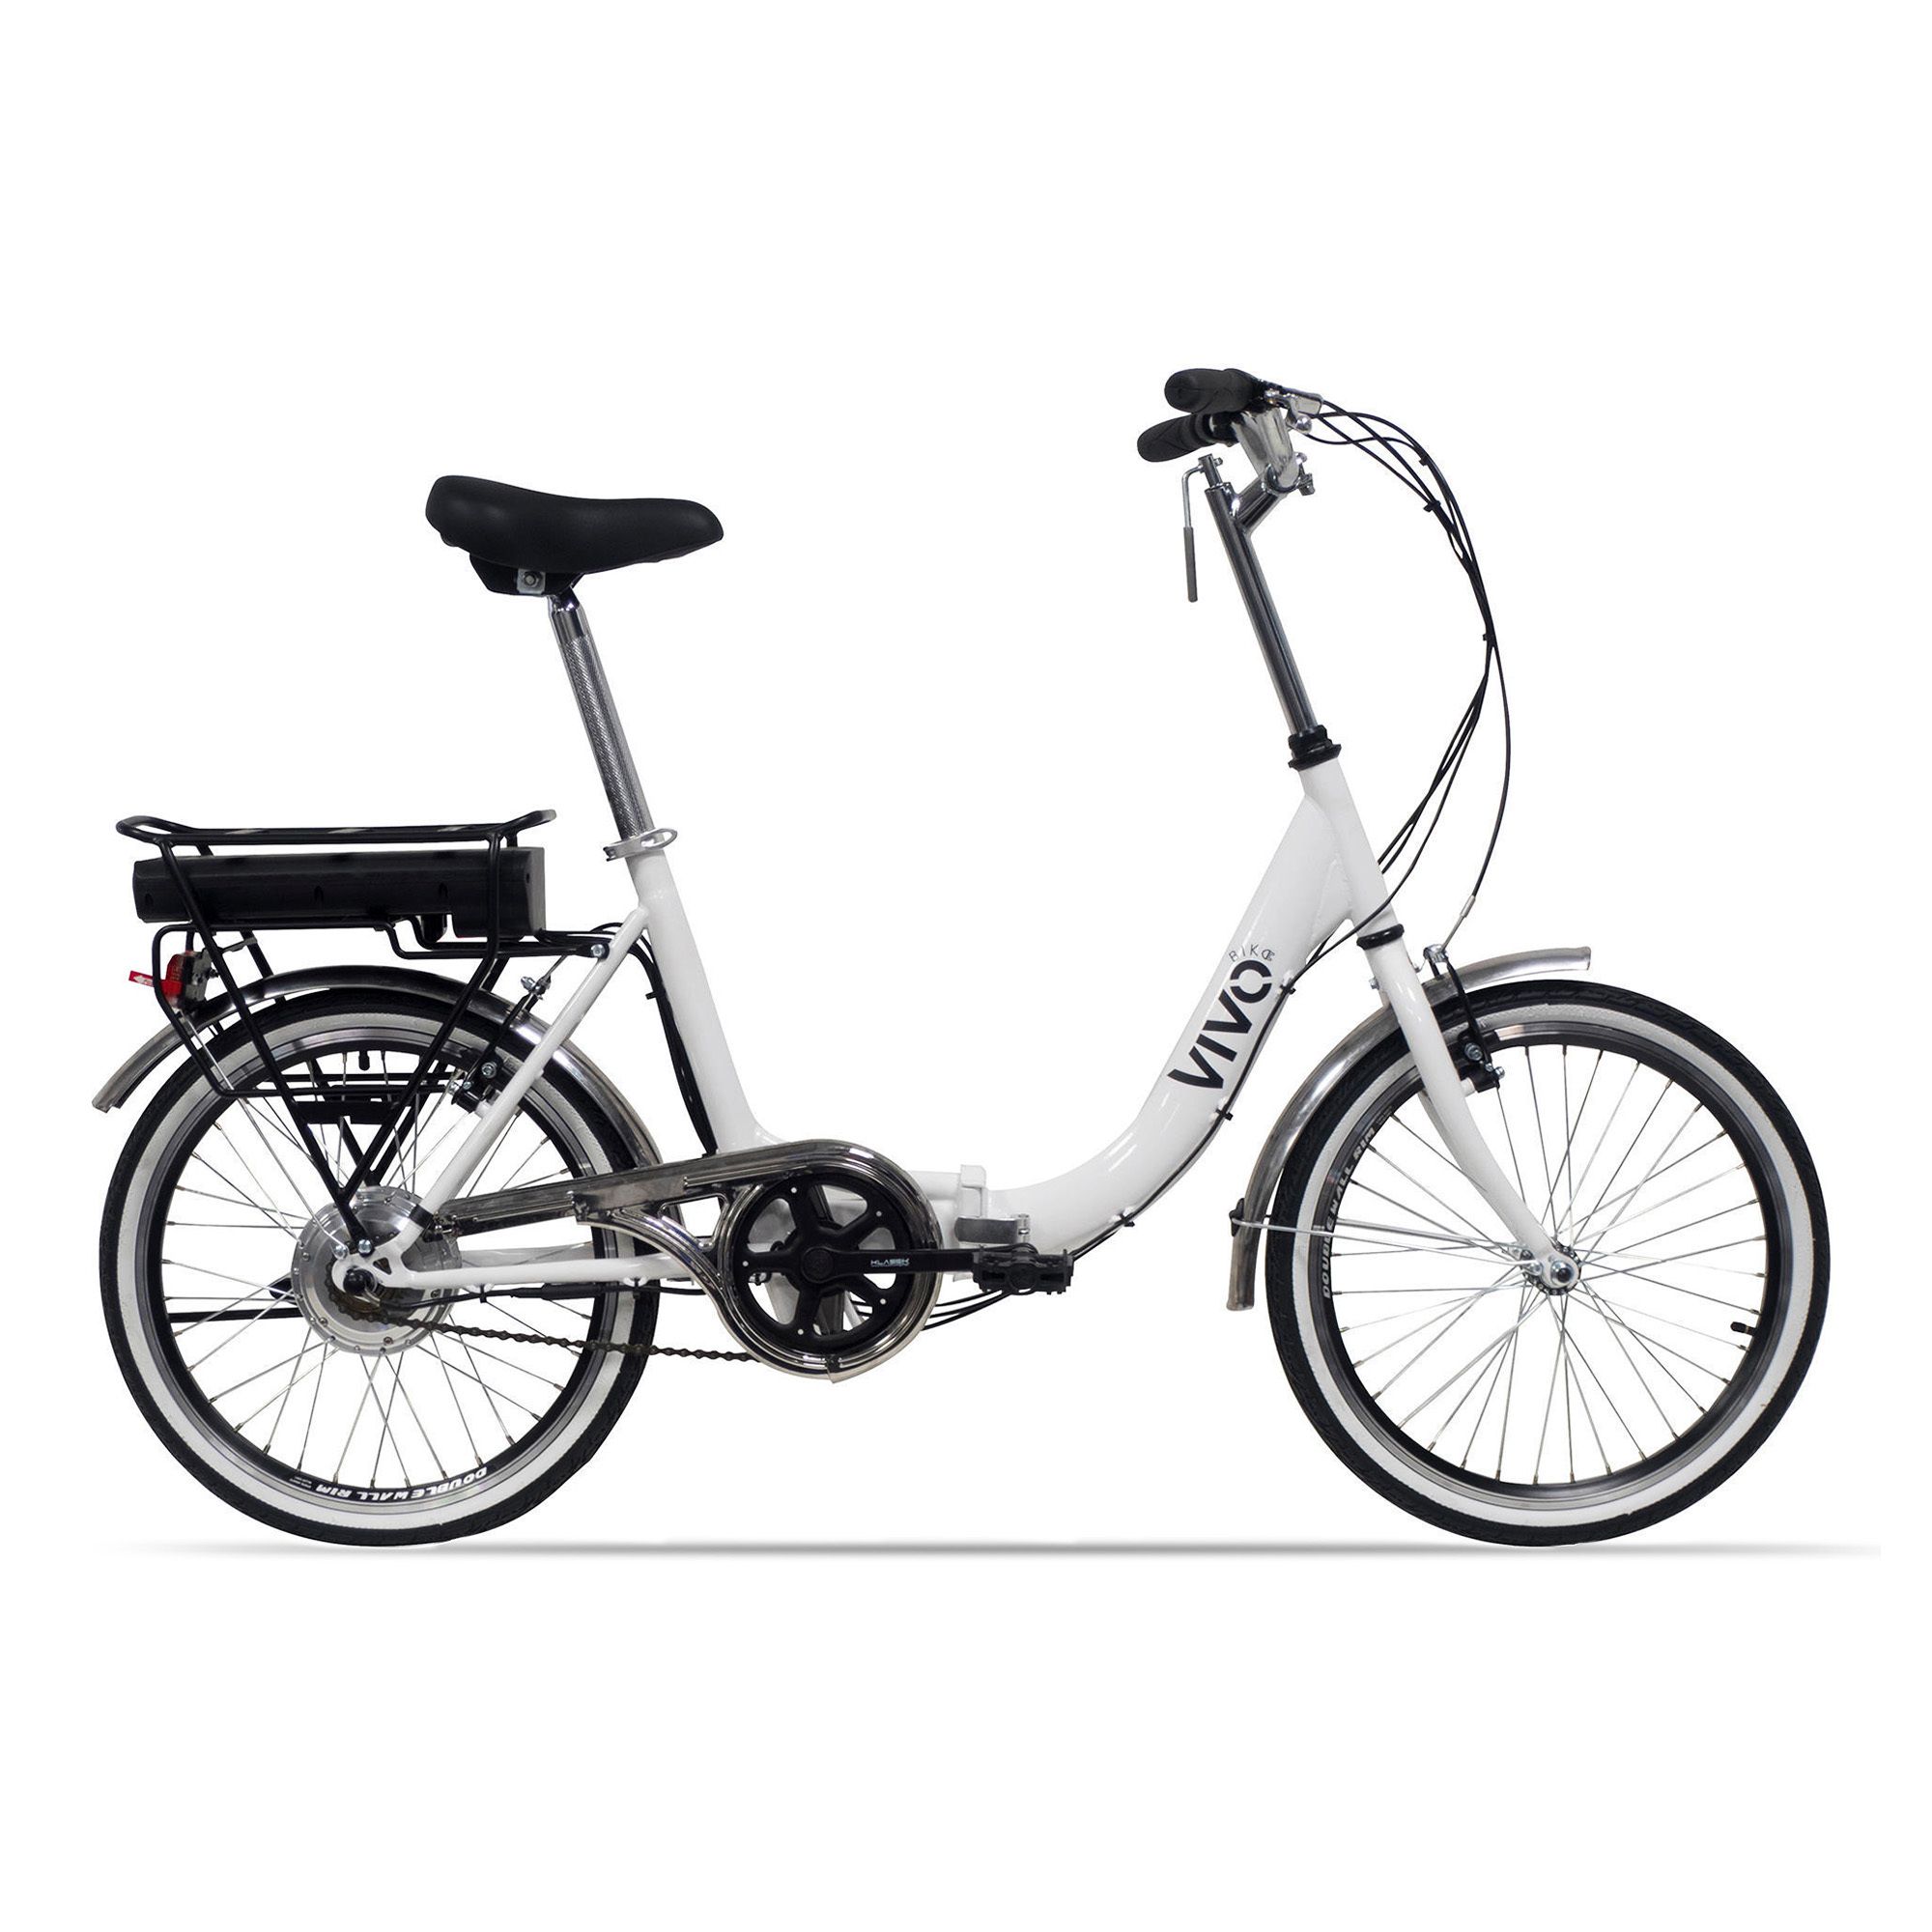 VG20 Bici elettrica Fold con ruote 20